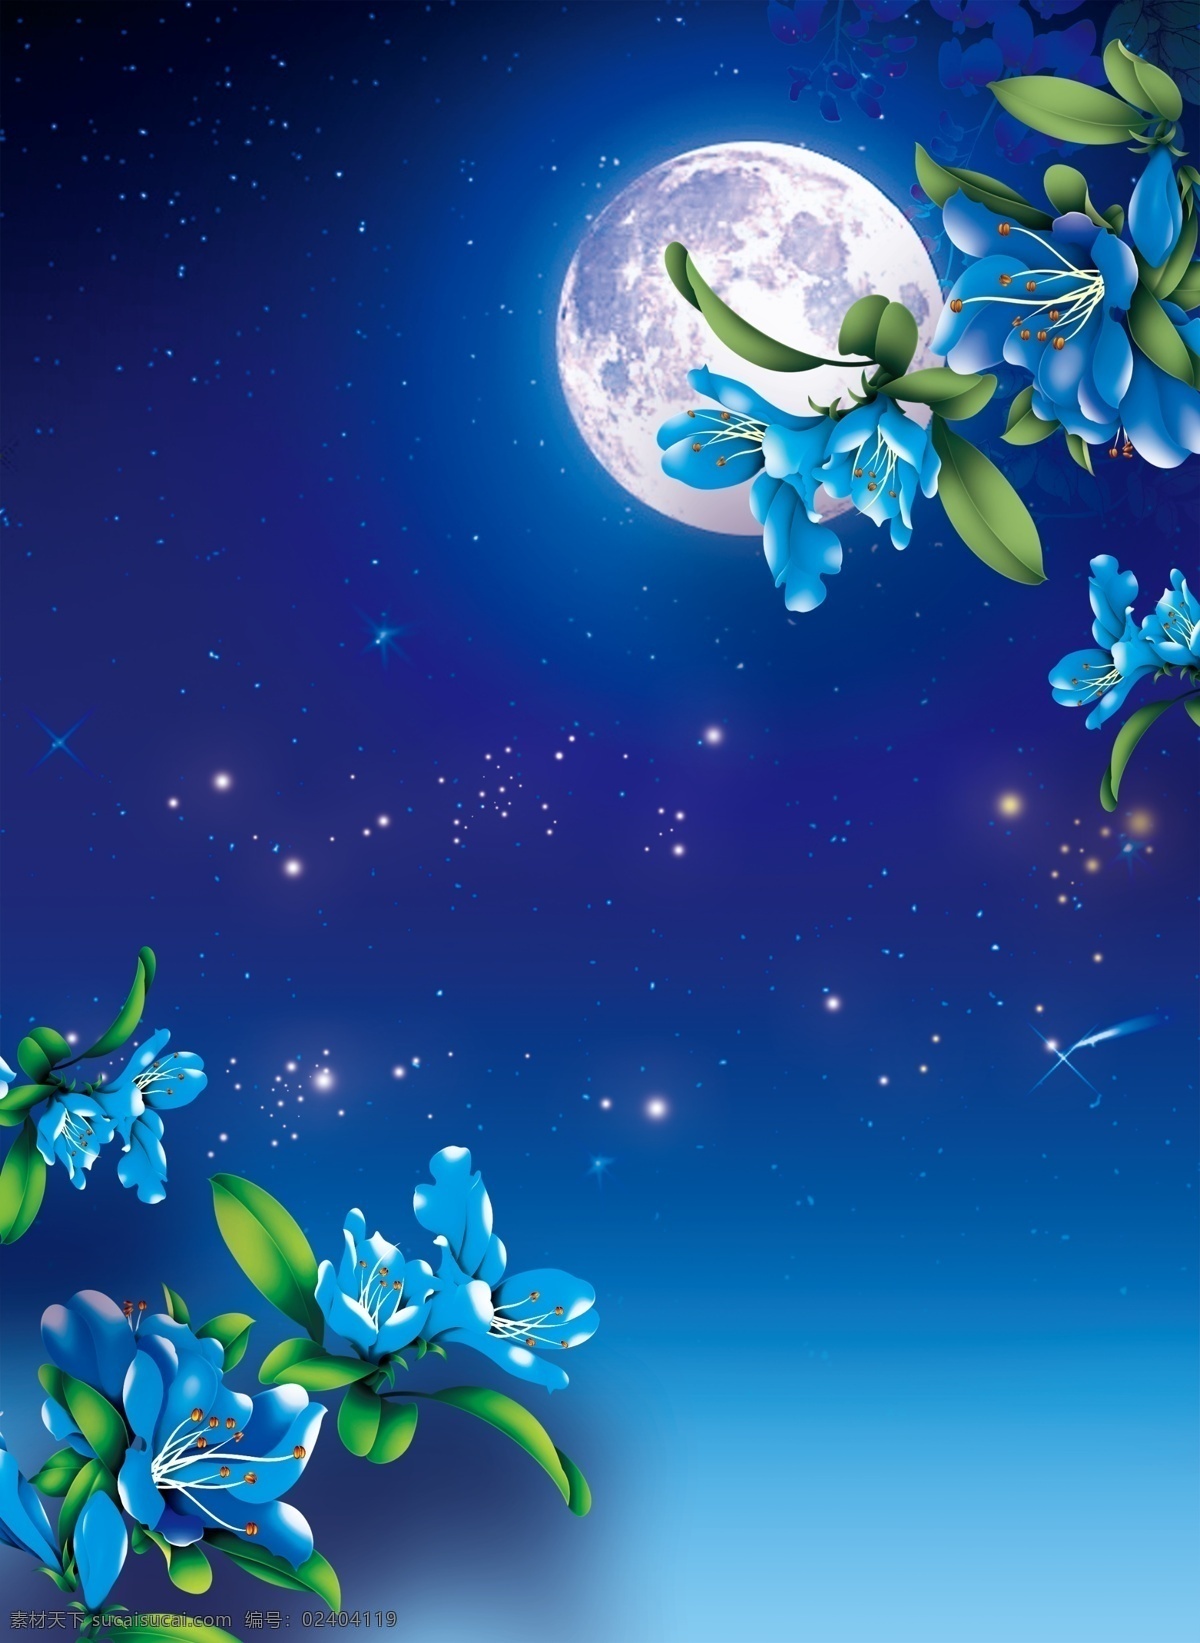 明月 夜色 繁星 花朵 背景 夜空背景 蓝色背景 繁星点点 蓝色花朵背景 明月夜色